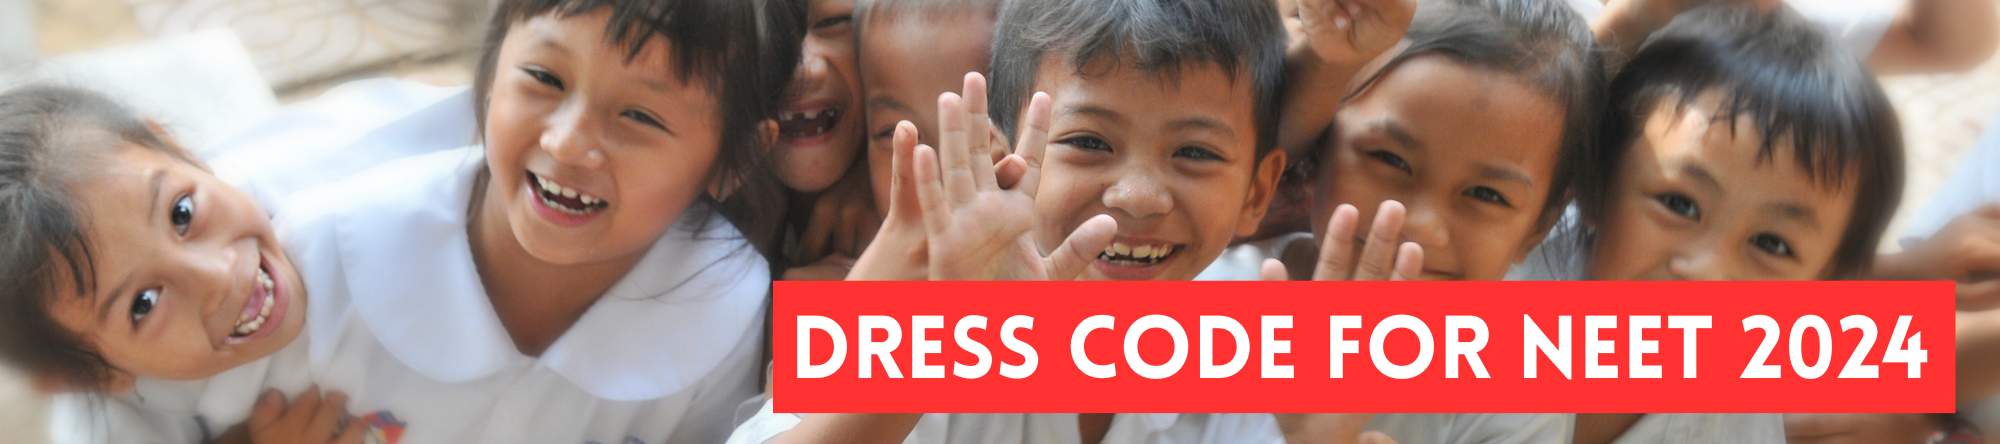 Dress Code for NEET 2024